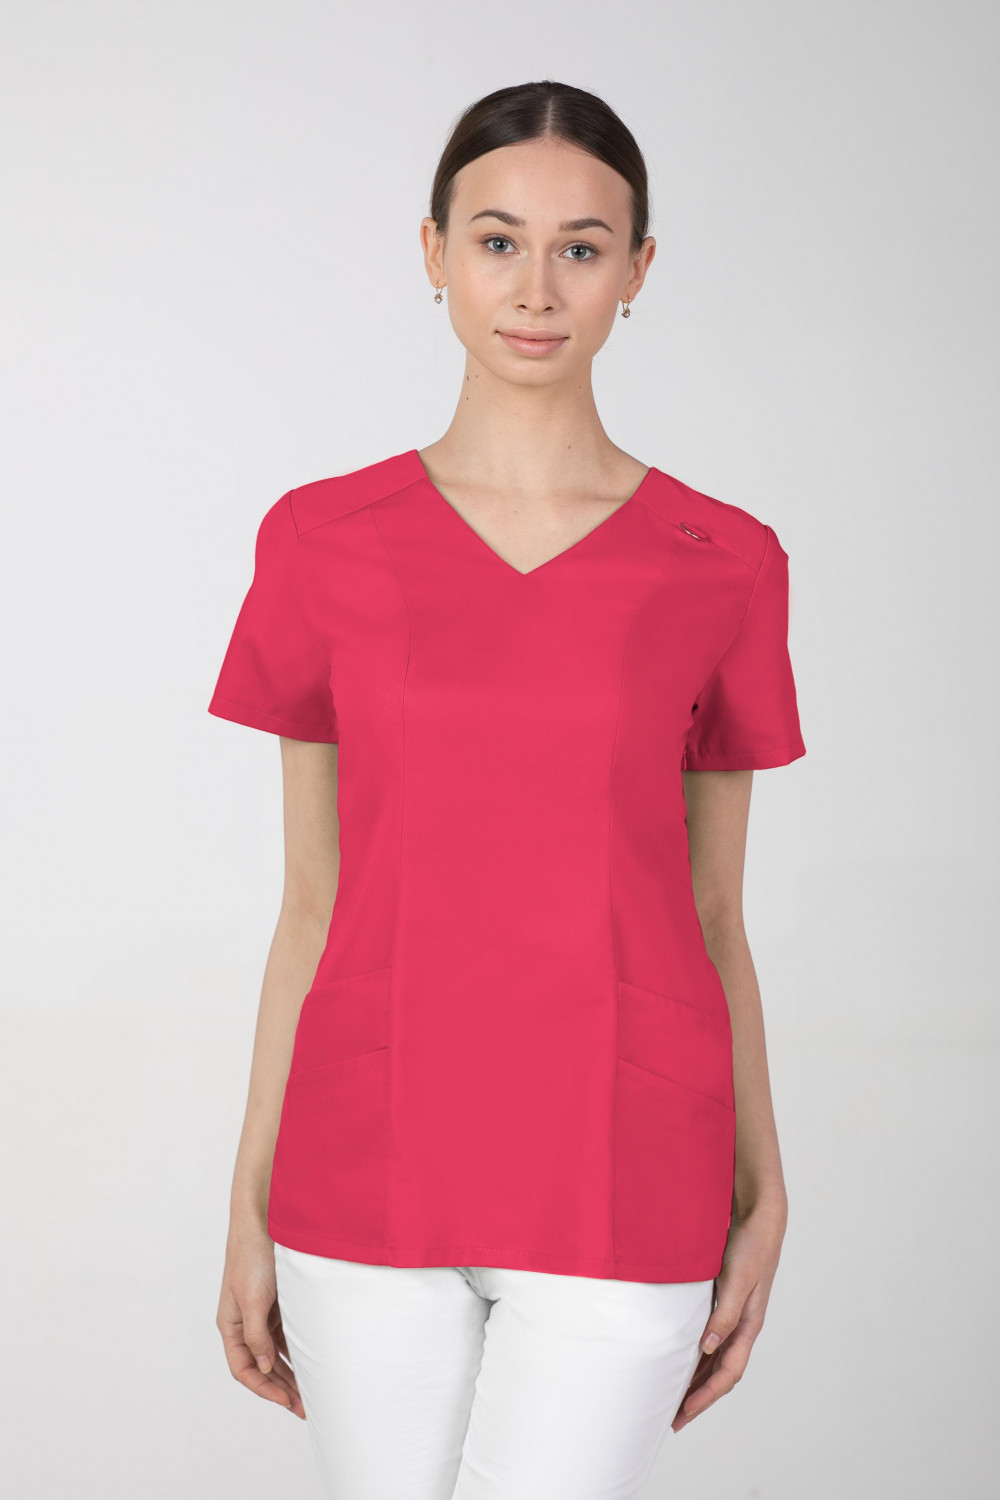 Bluza medyczna damska M-376A 26 kolorów. Amarant